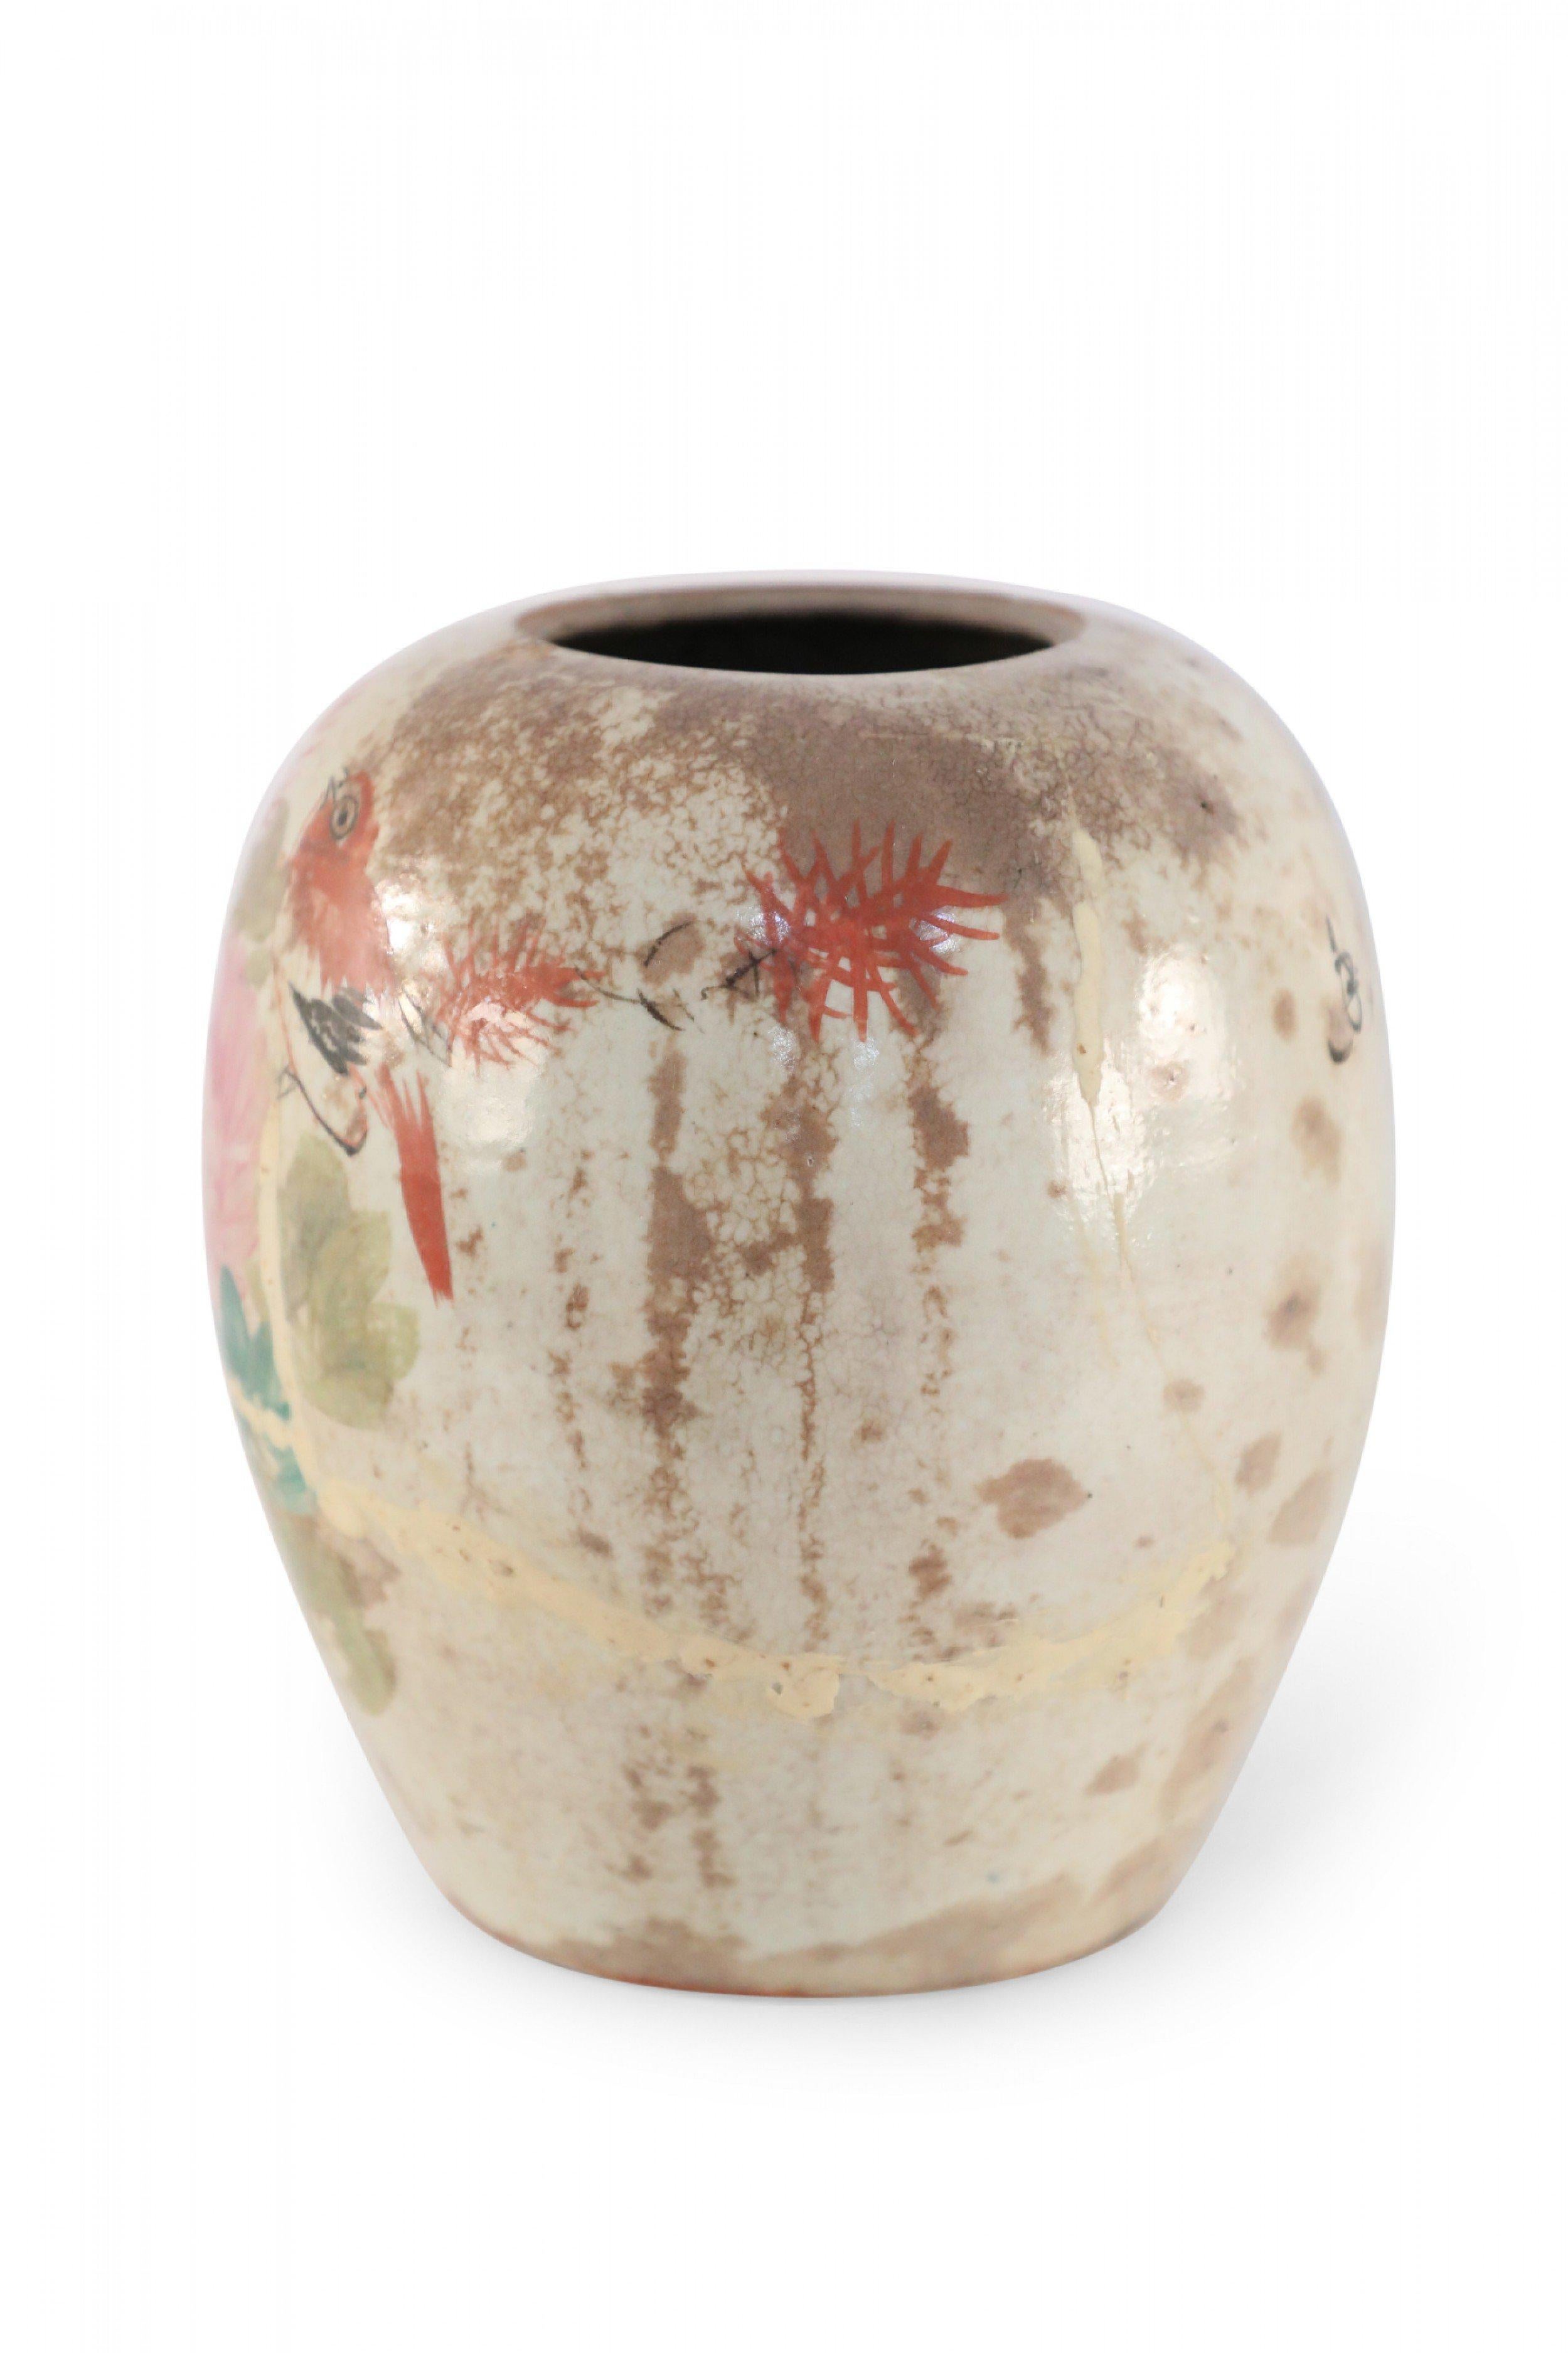 Vase antique chinois (début du 20e siècle) en porcelaine bulbeuse avec des fleurs roses et un oiseau orange au milieu de feuilles vertes sur une face et des caractères sur le revers. La glaçure présente des craquelures sombres et mouchetées.
   